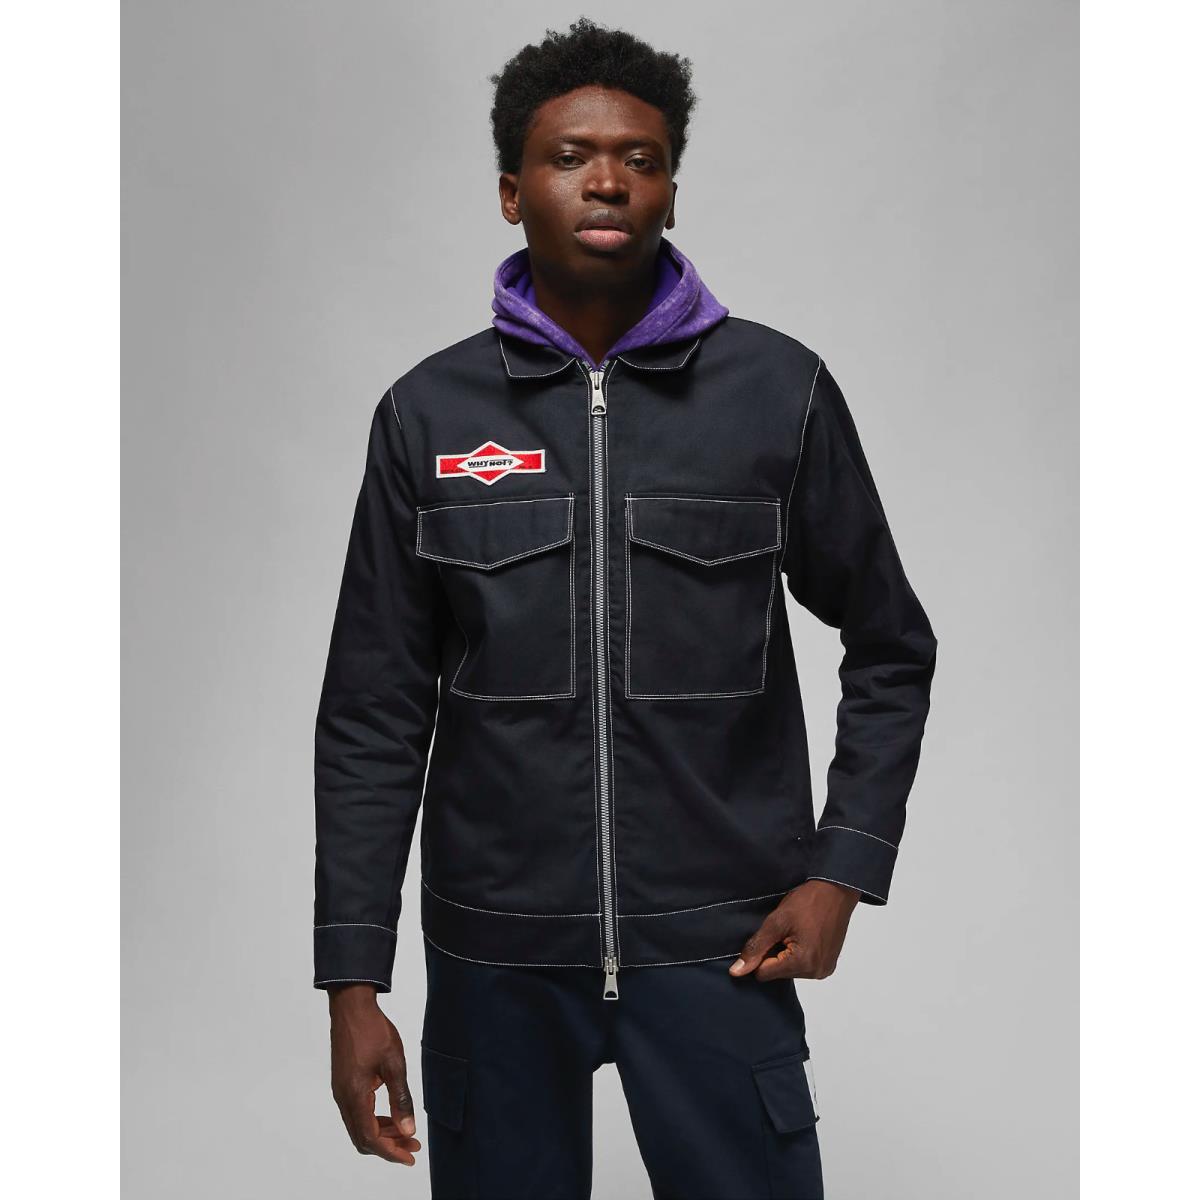 Jordan Why Not Denim Jacket DX0598-010 Black Men S XL